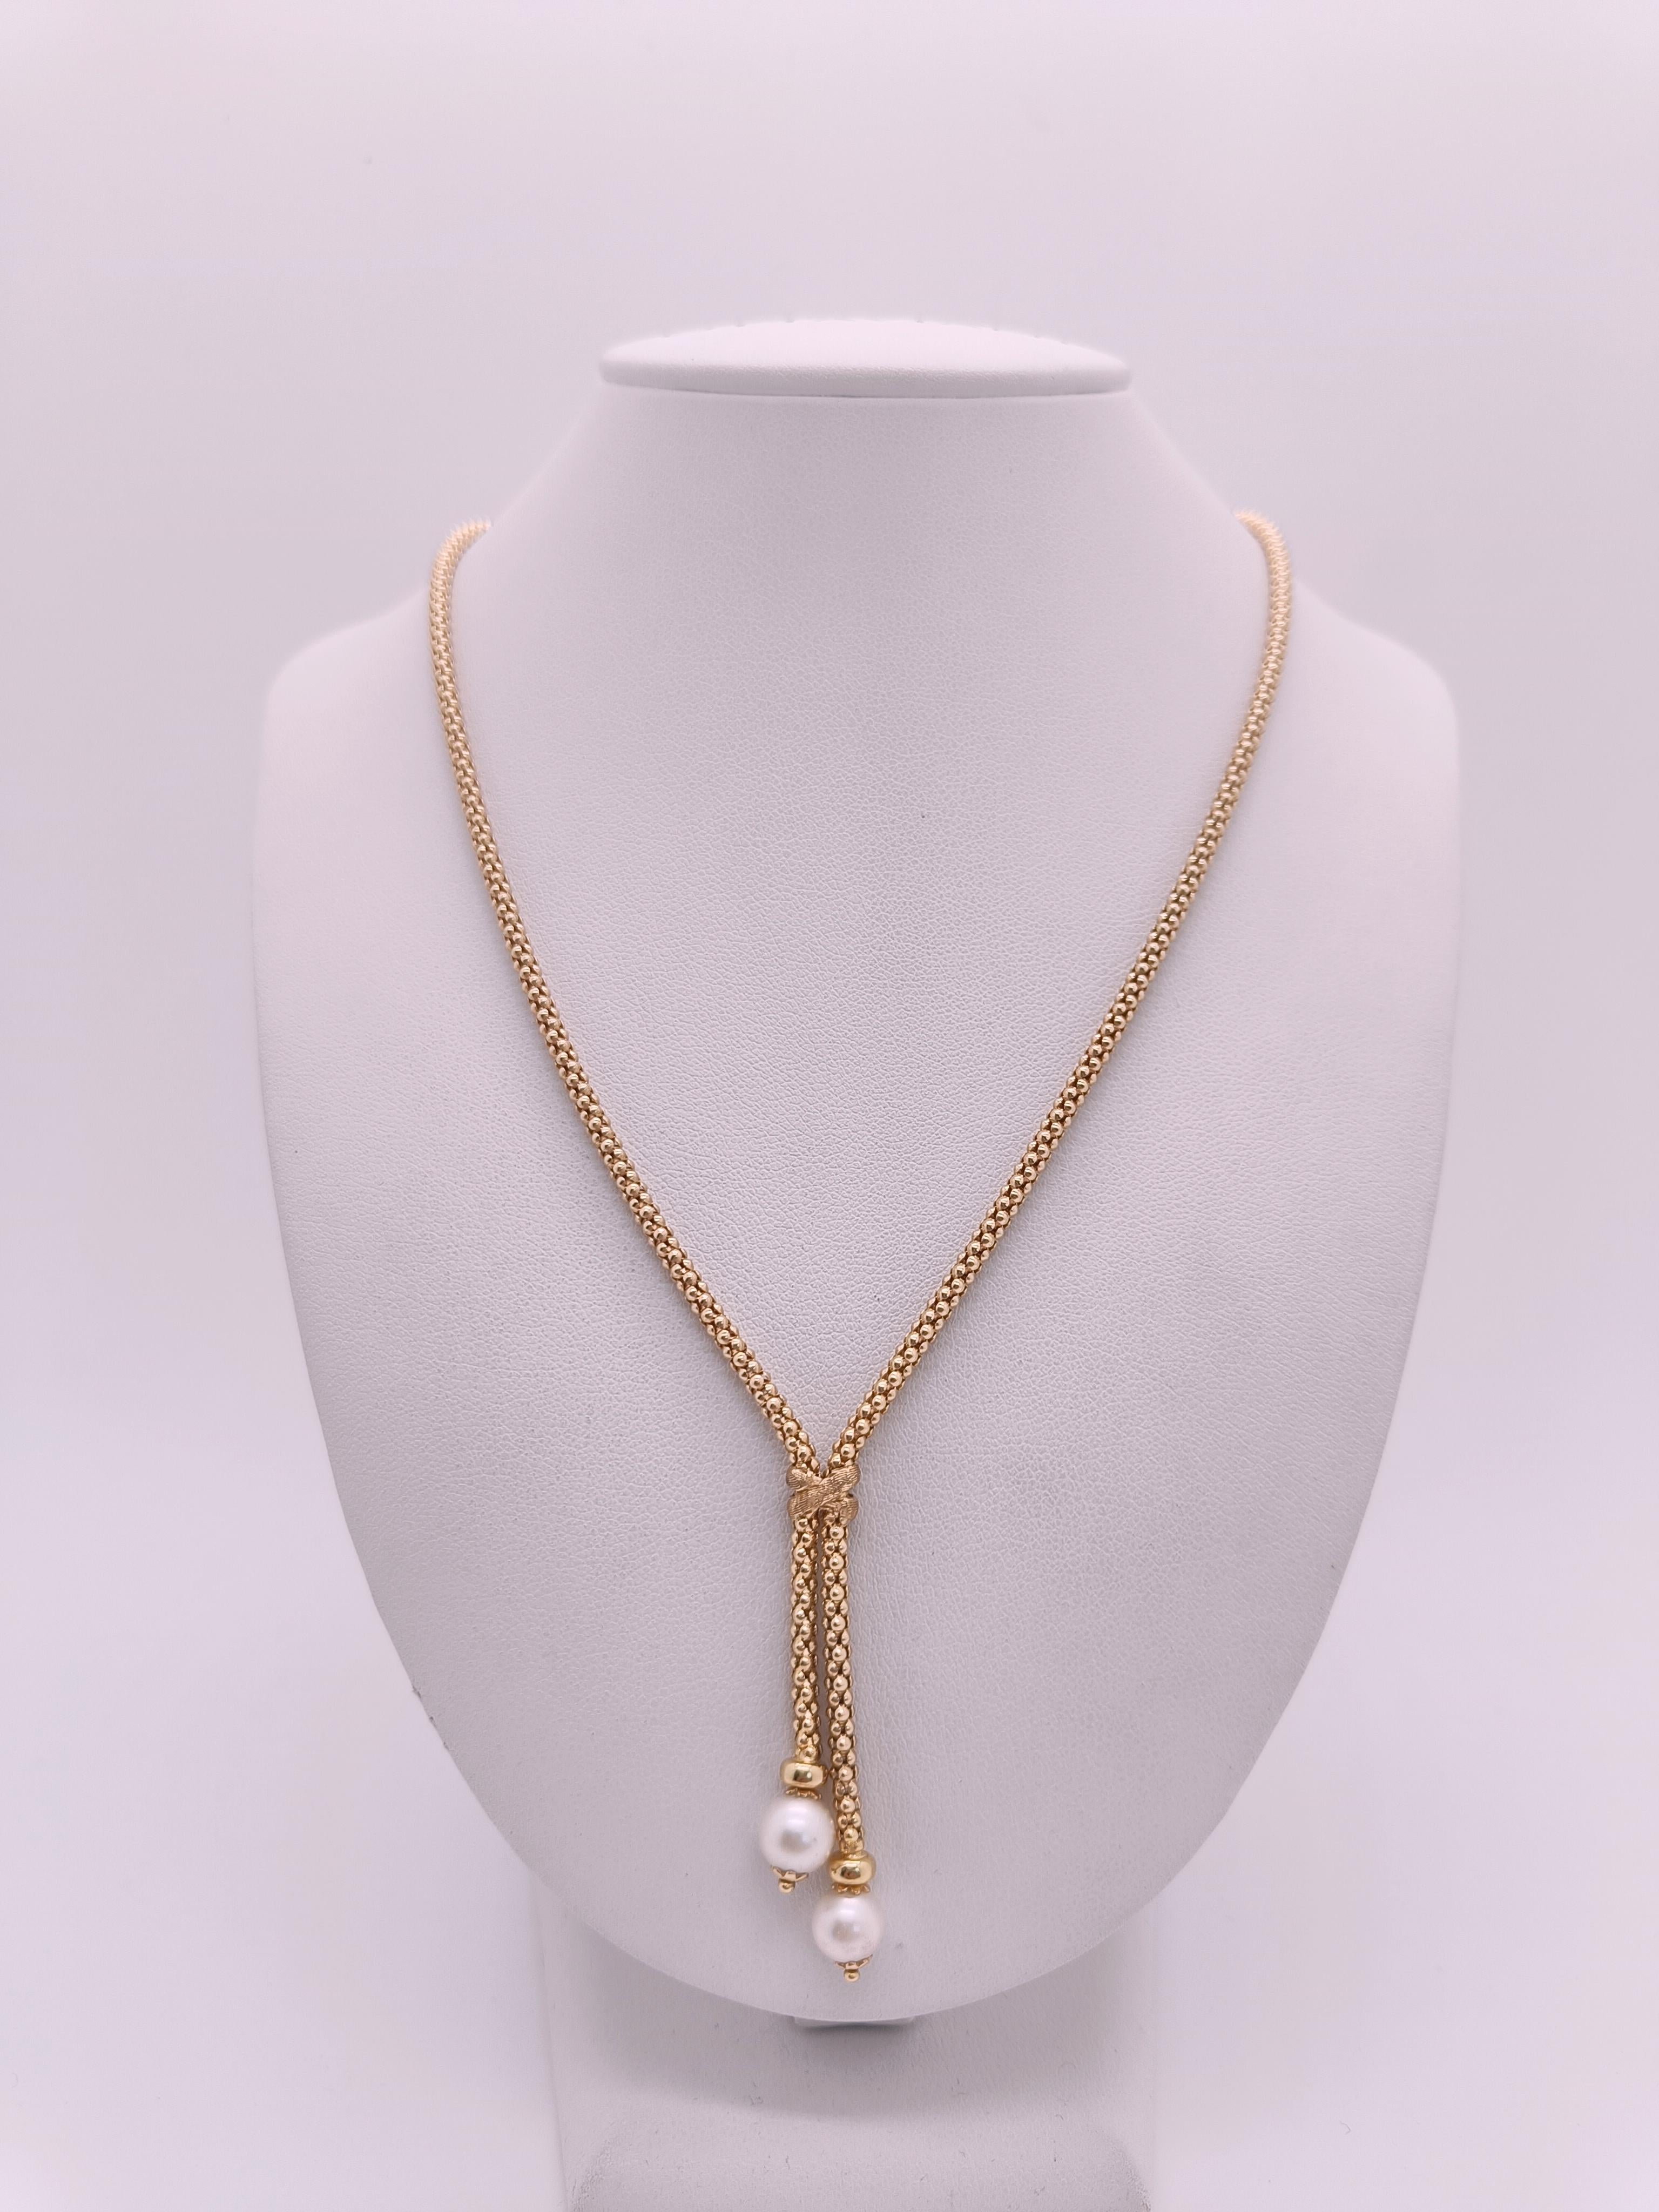 Collier avec deux touffes de perles de culture en pendentif.

Entièrement en or 18 carats, une belle maille ronde, durable, brillante et élégante.
Les détails comprennent un nœud richement sculpté divisant le collier et les touffes se terminant par